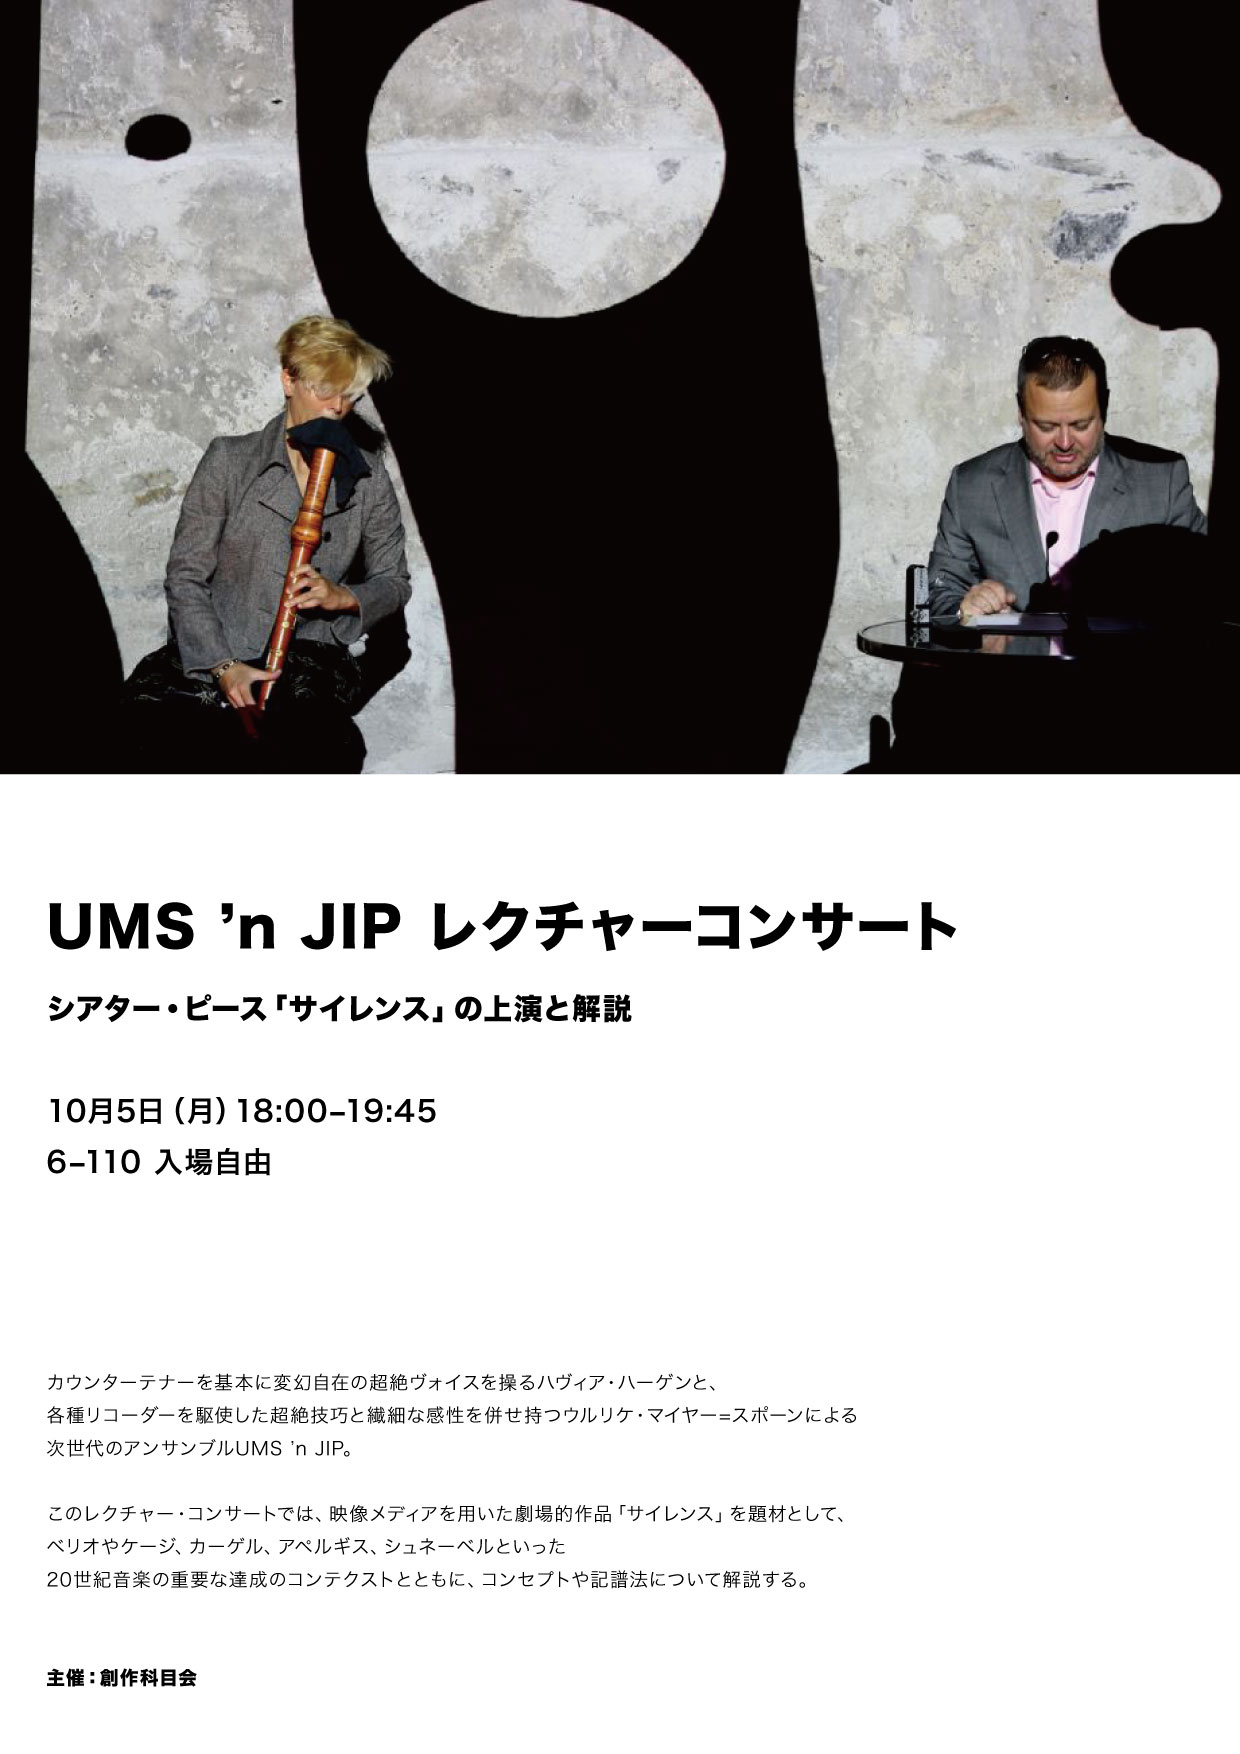 UMS ’n JIP